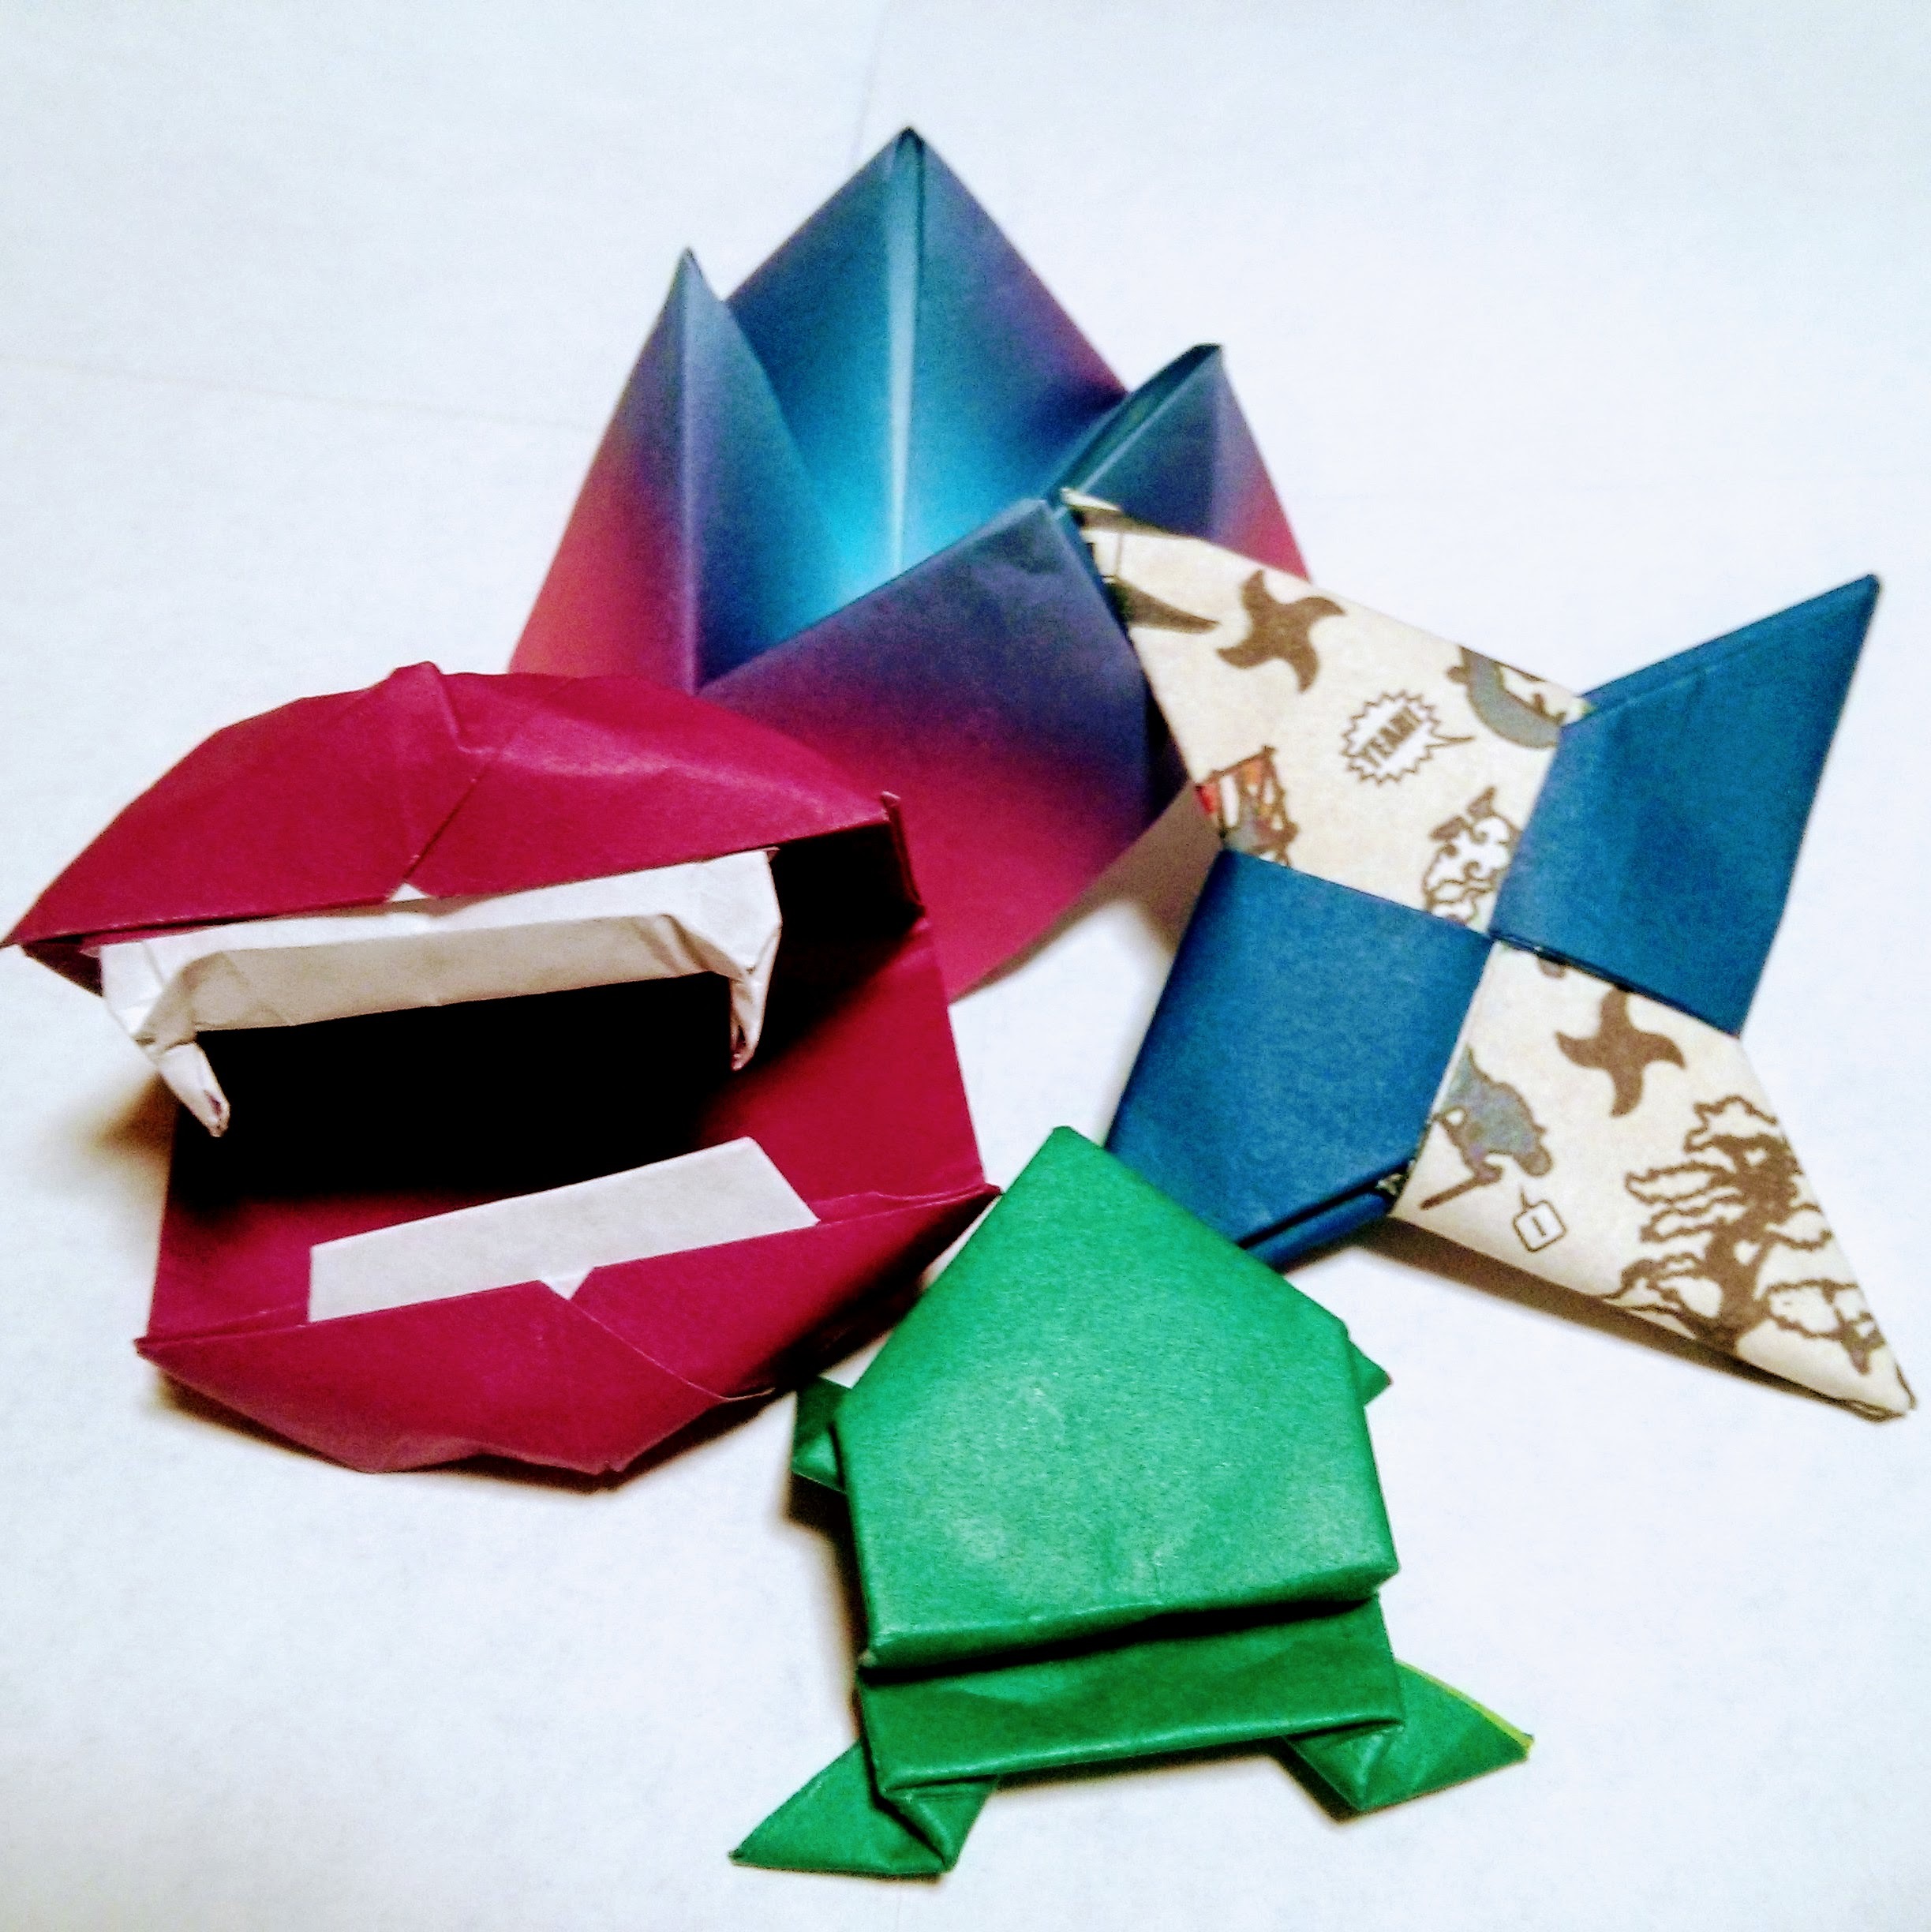 面白い折り紙の折り方17選 簡単変わり種や子供喜ぶすごいネタまでご紹介 Kurashi No